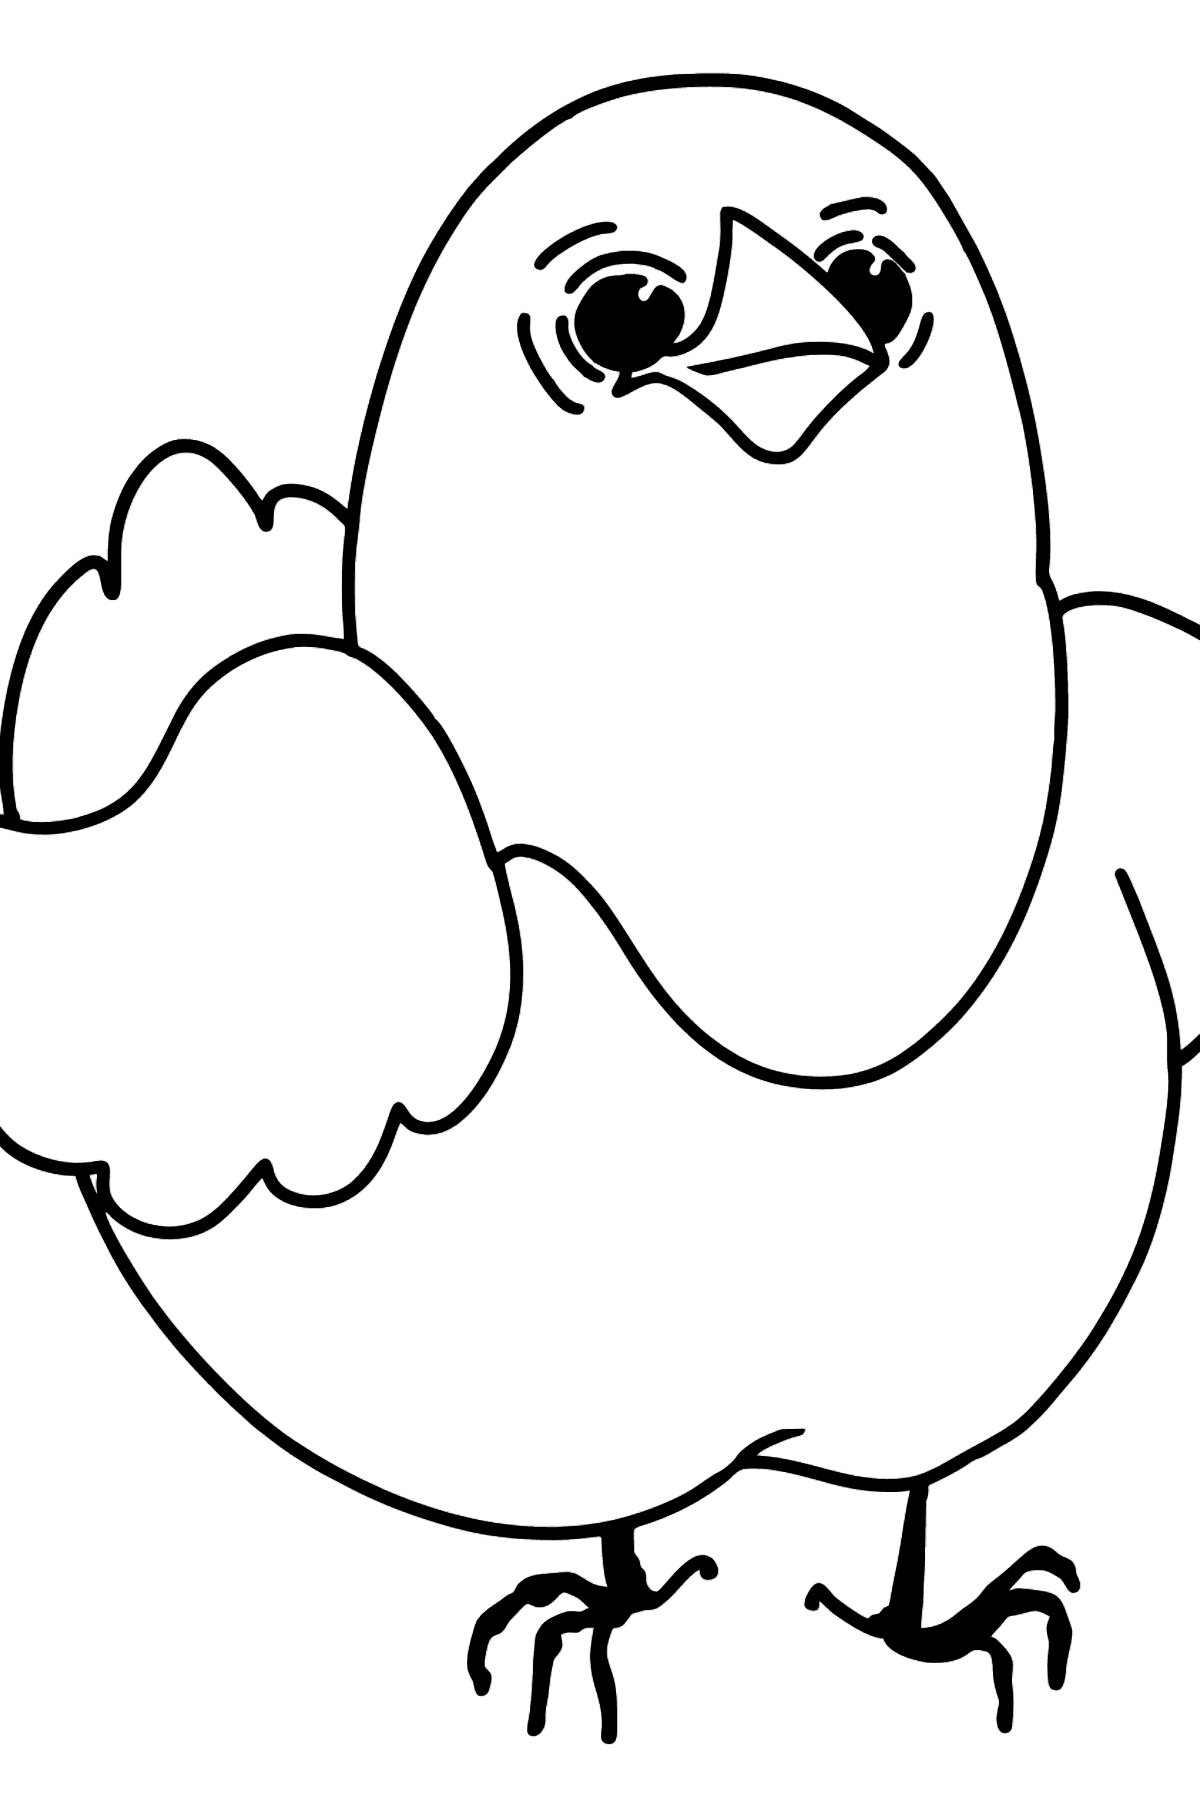 Sevimli küçük tavuk boyama sayfası - Boyamalar çocuklar için